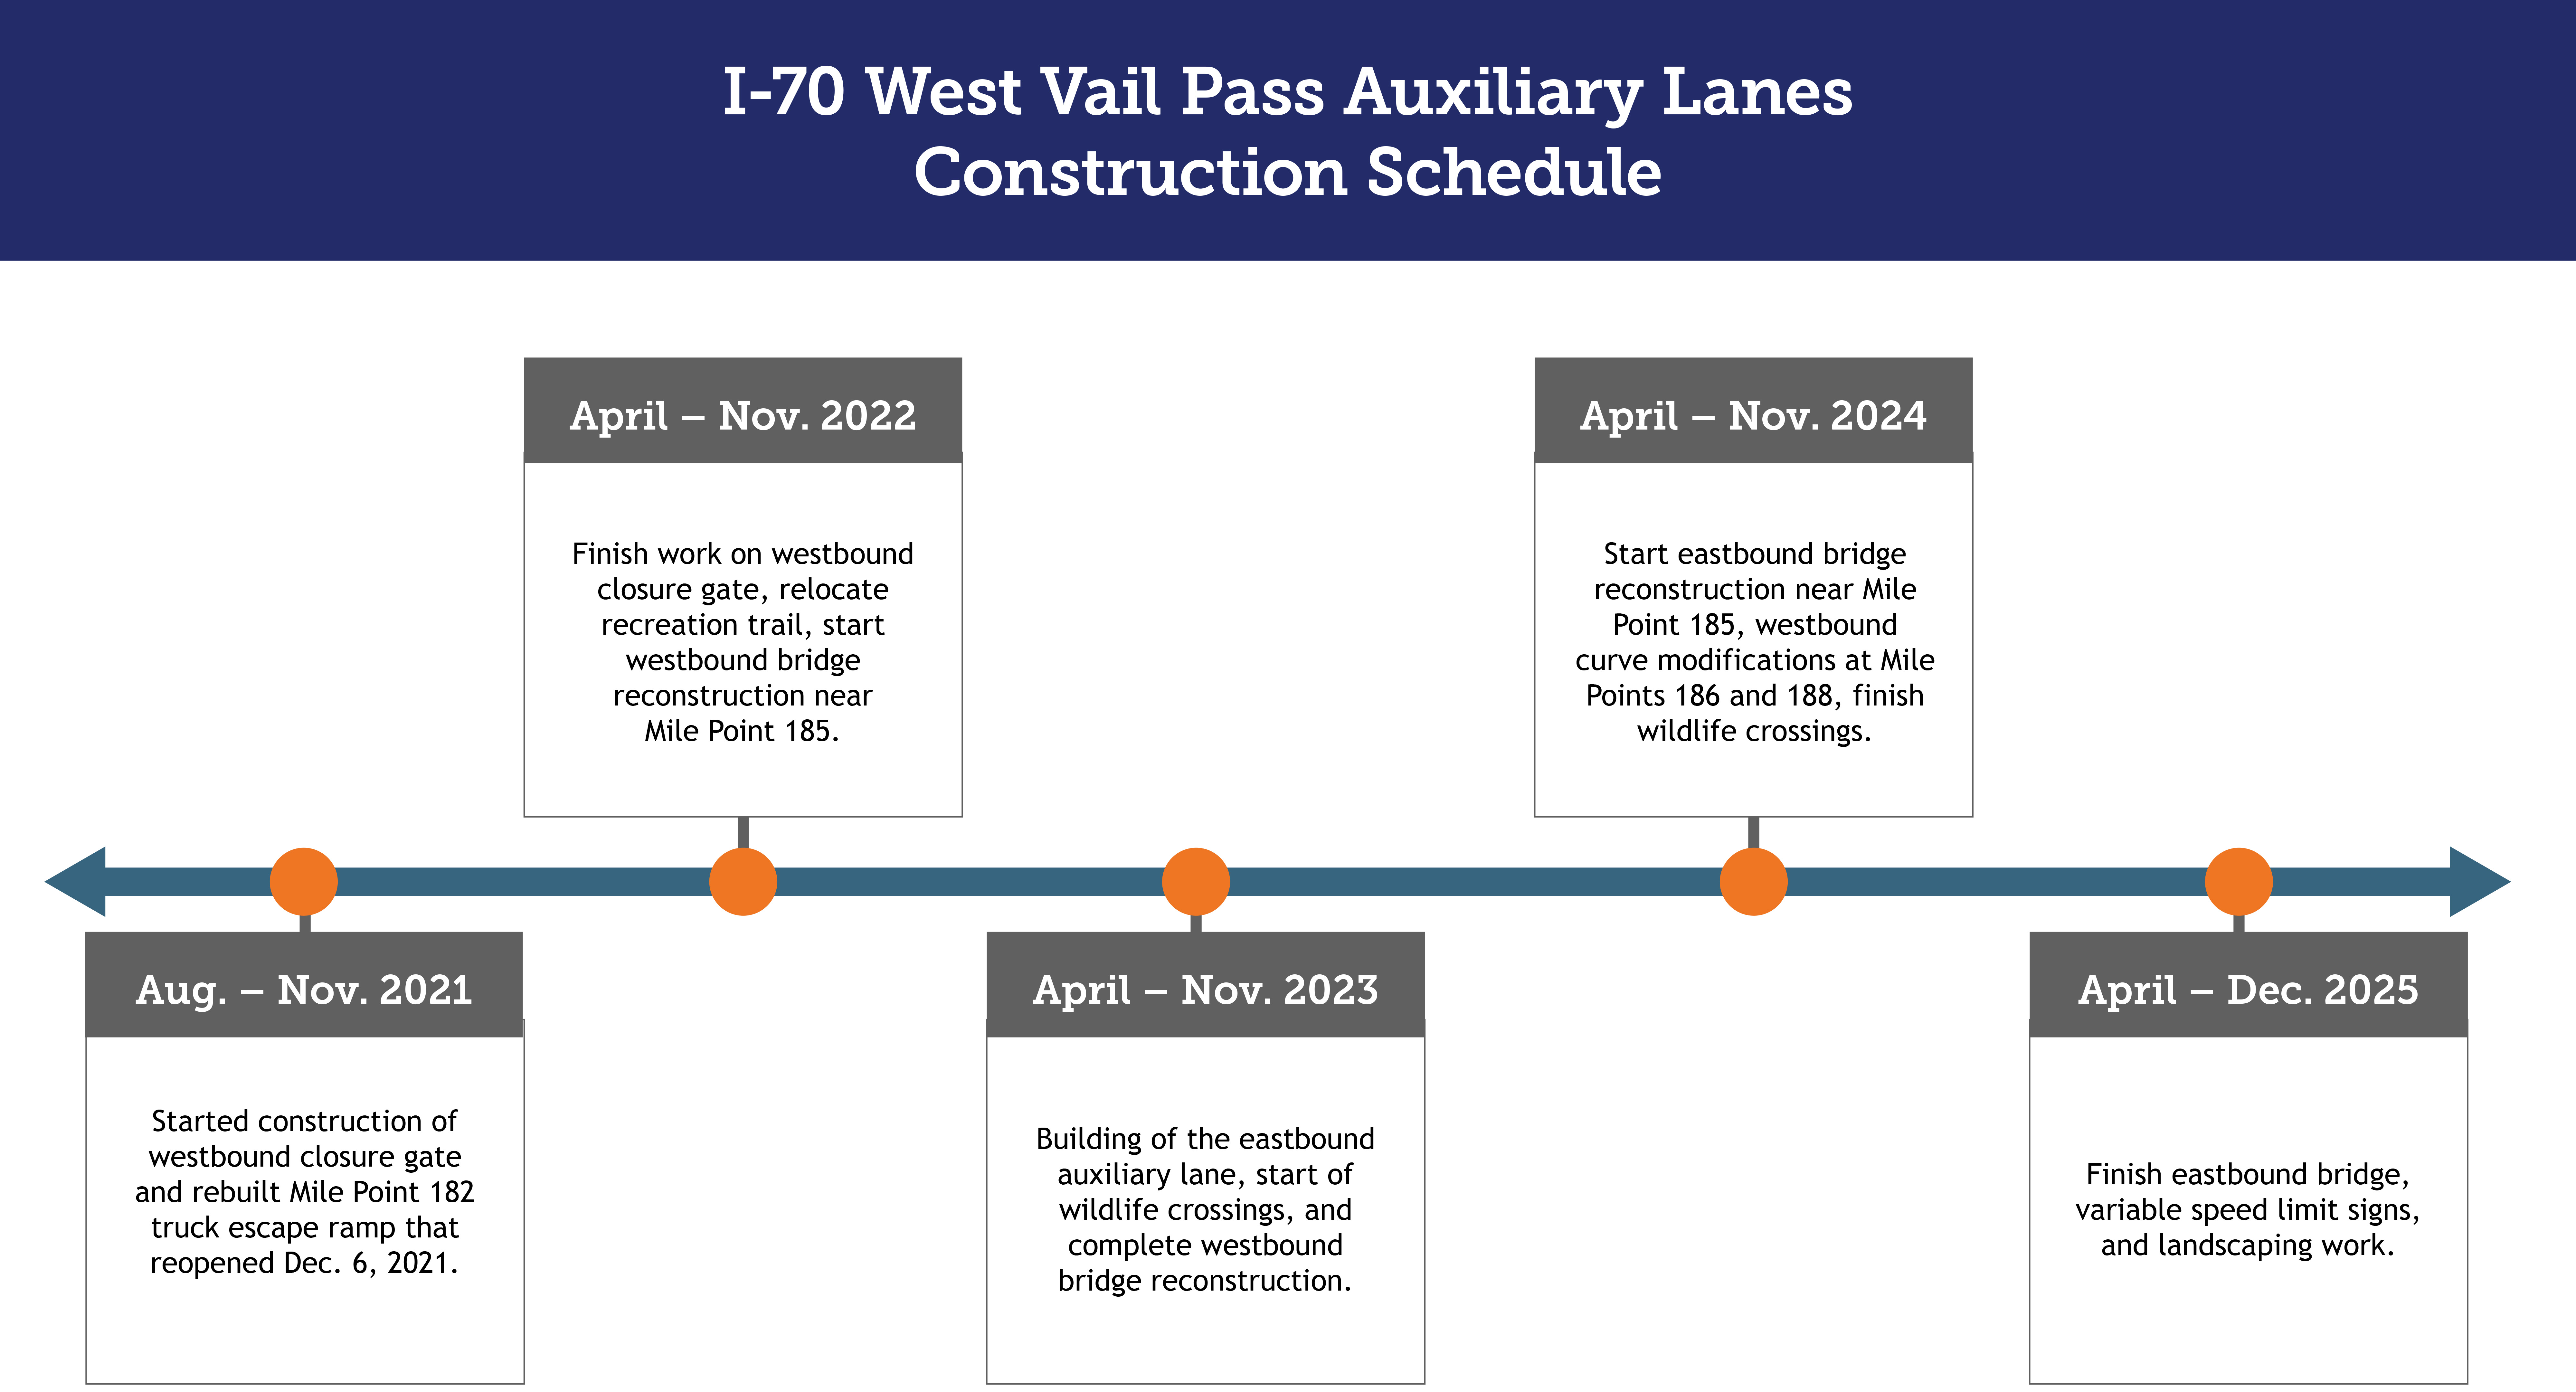 Kiewit_VailPass_Construction Timeline-220105.jpg detail image